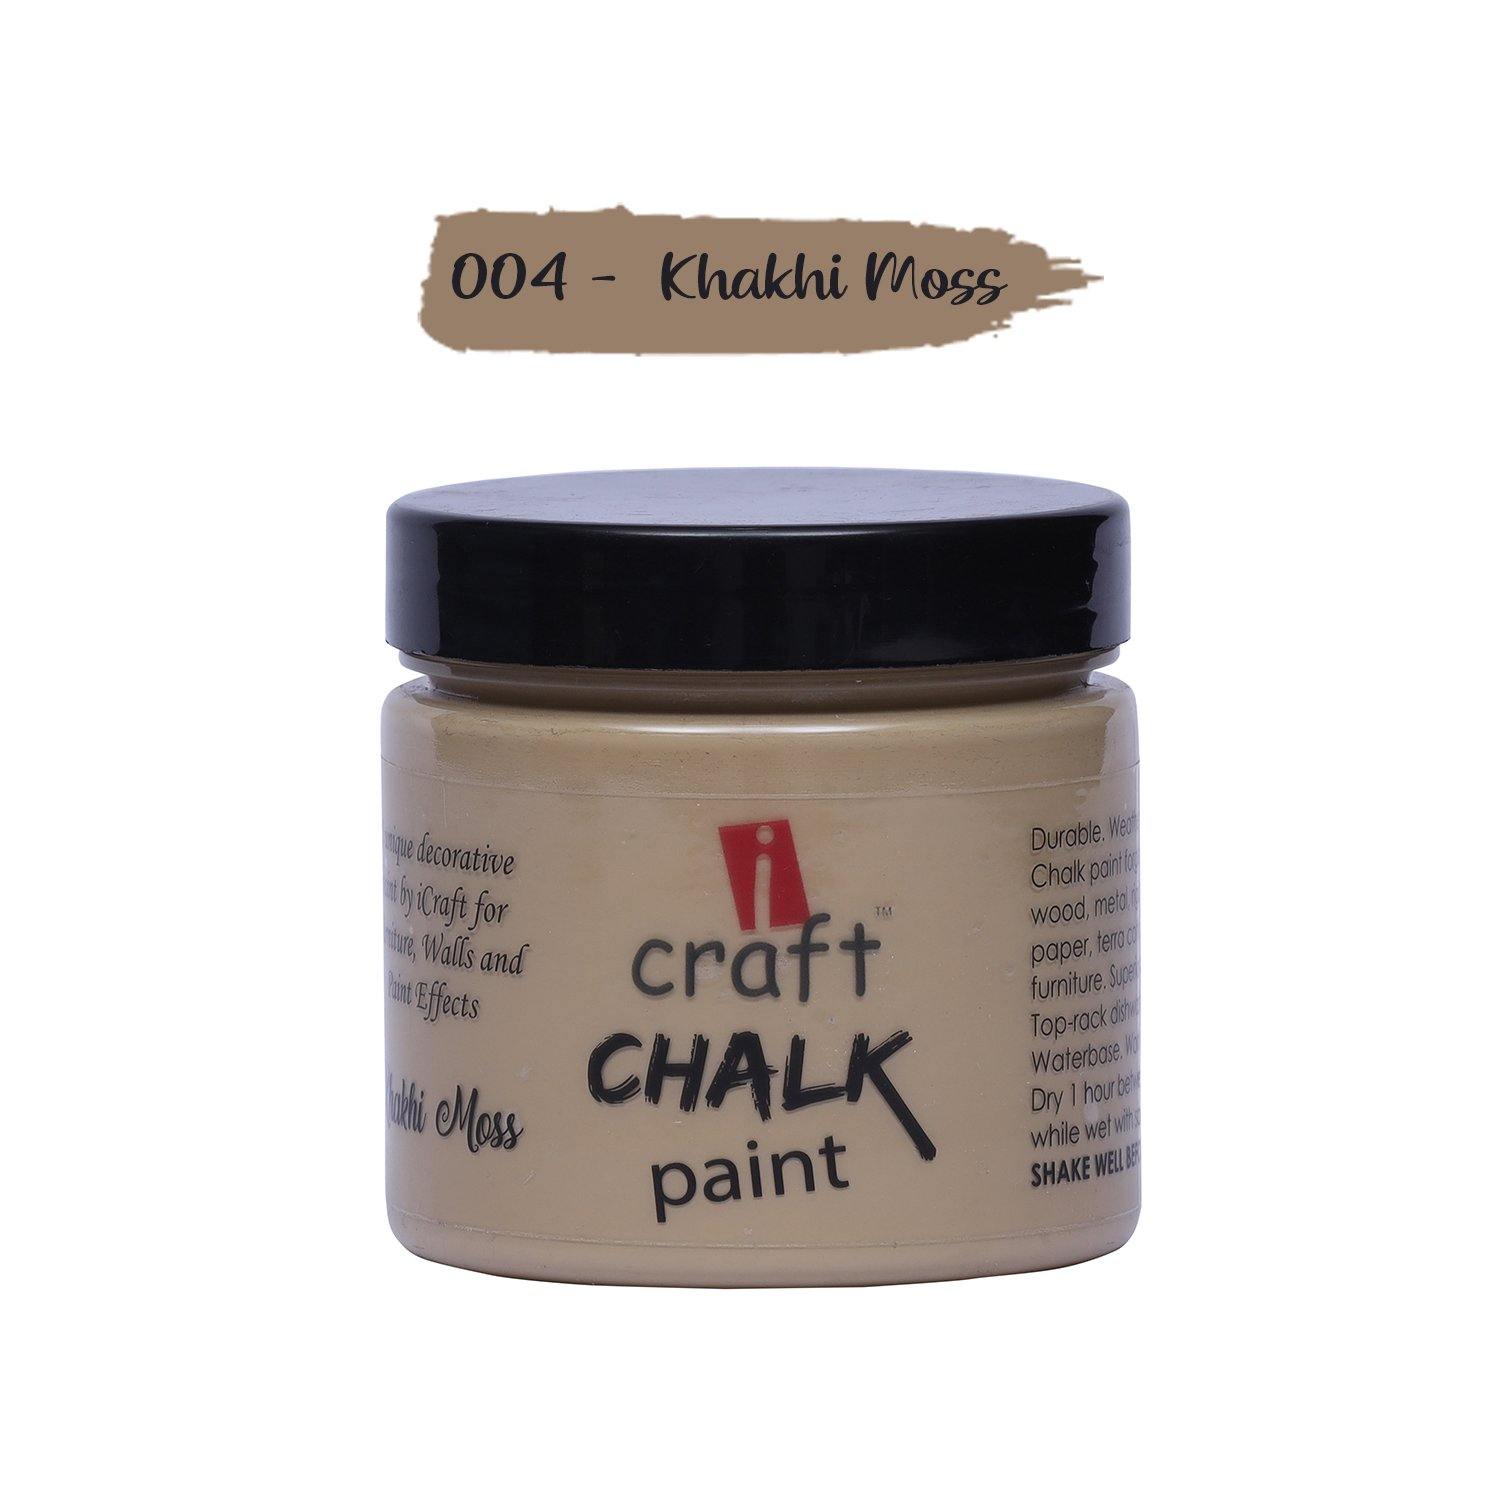 Chalk Paint - 004 (Khakhi Moss) - Growing Craft - Best craft Supplies